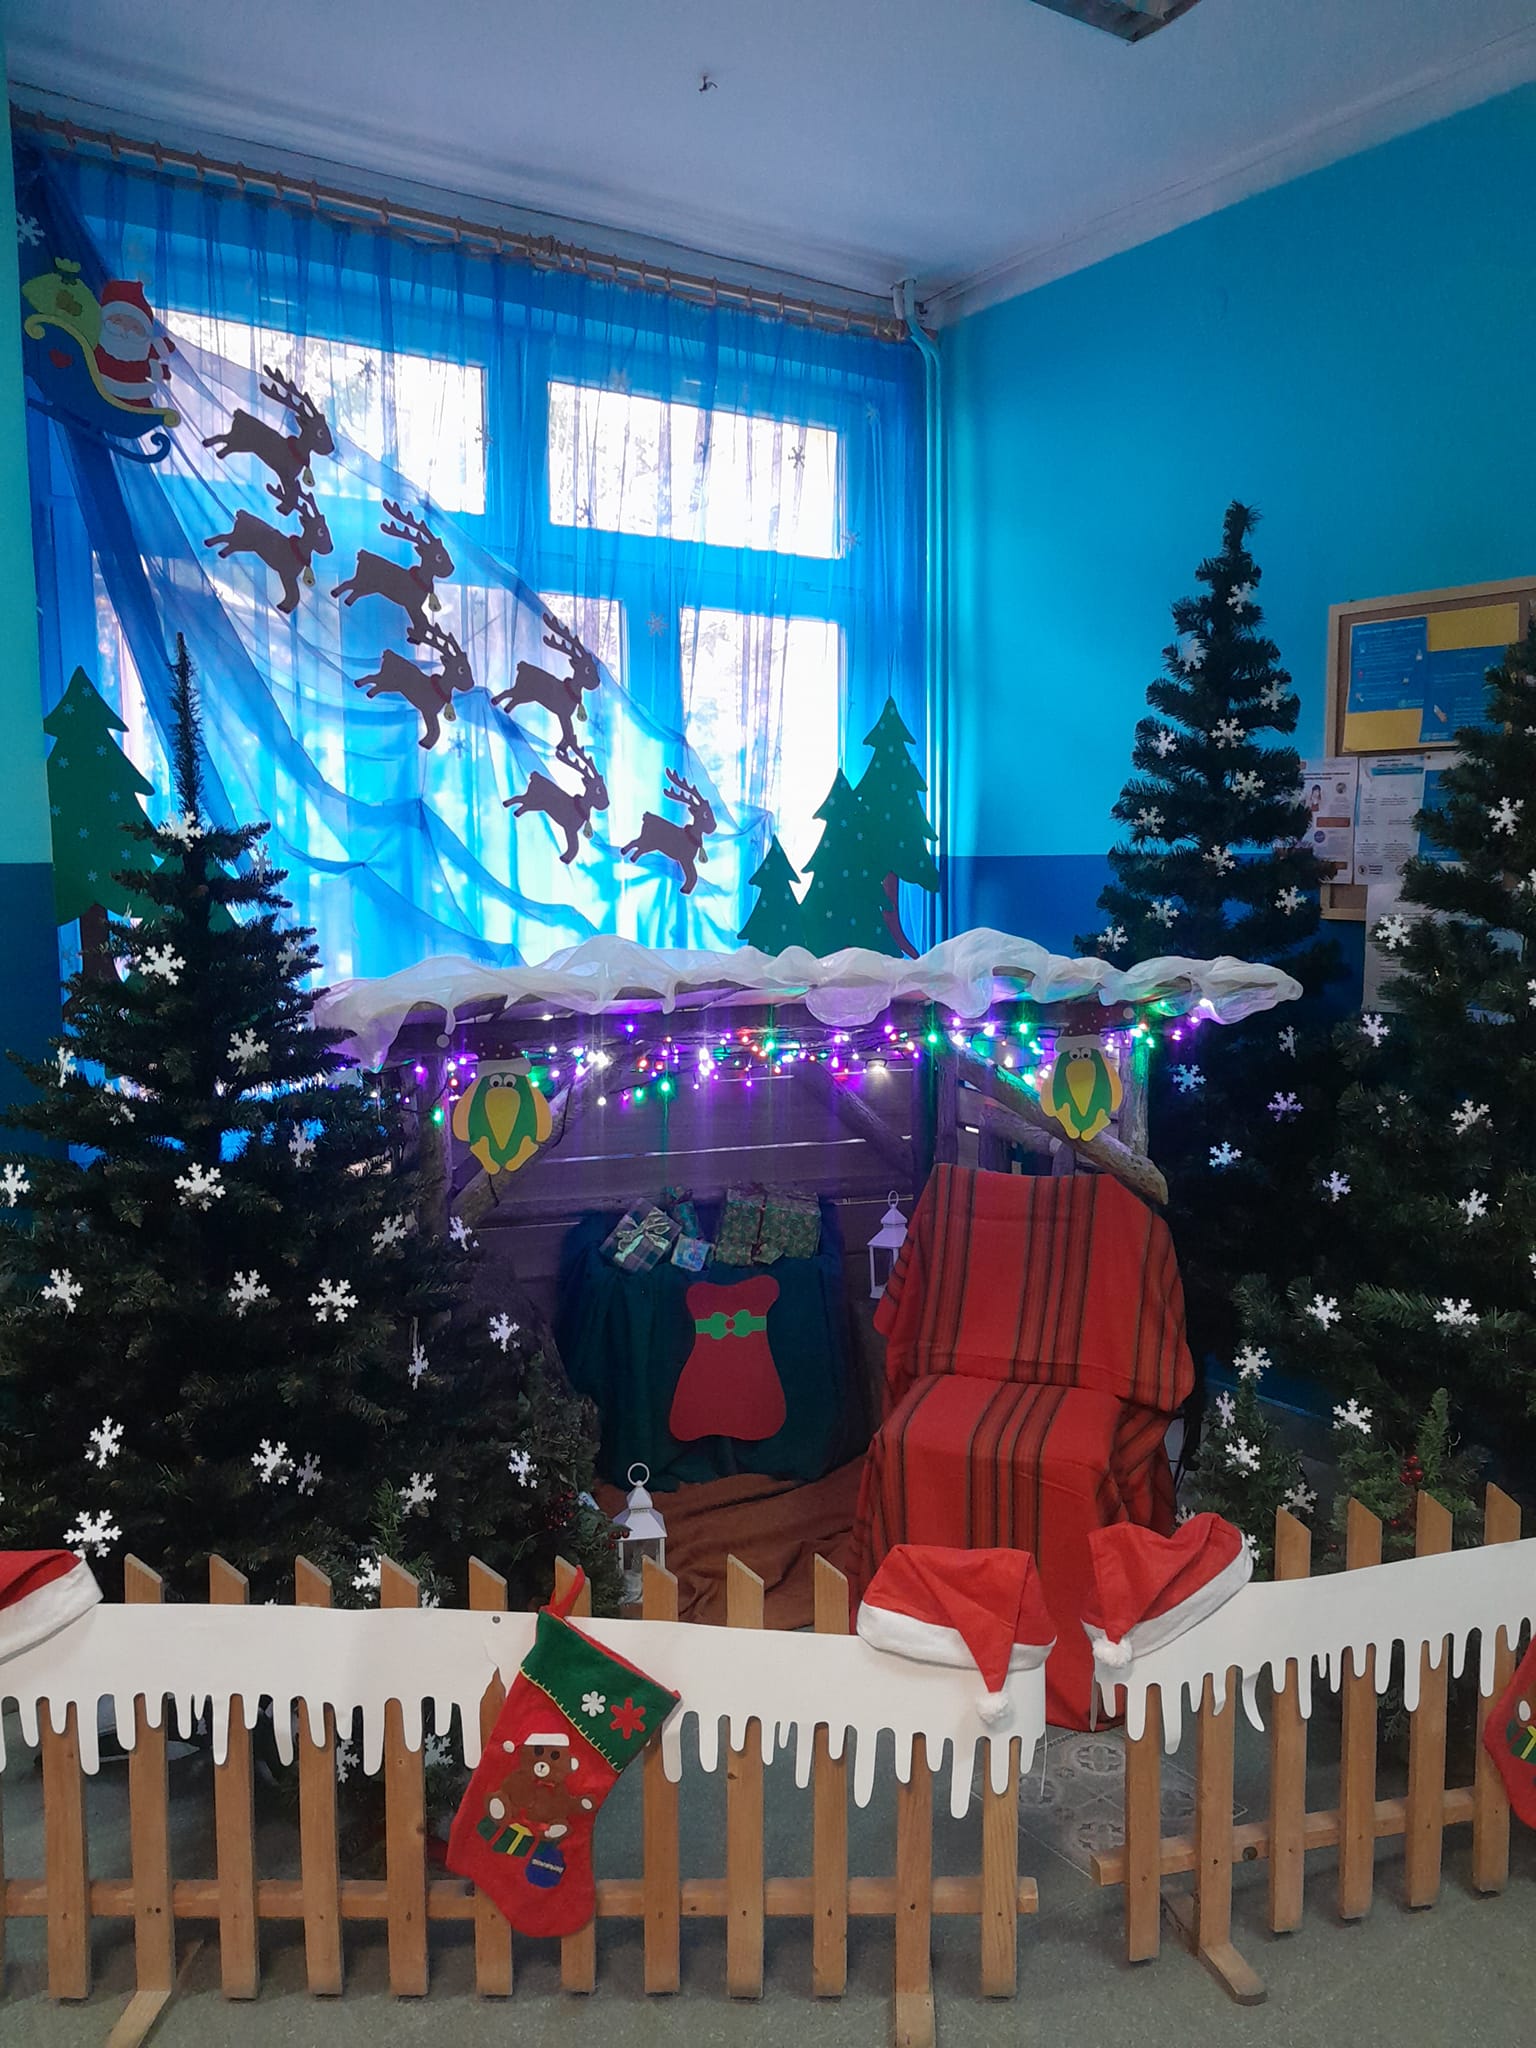 Miejsce dla Świętego Mikołaja już przygotowane!